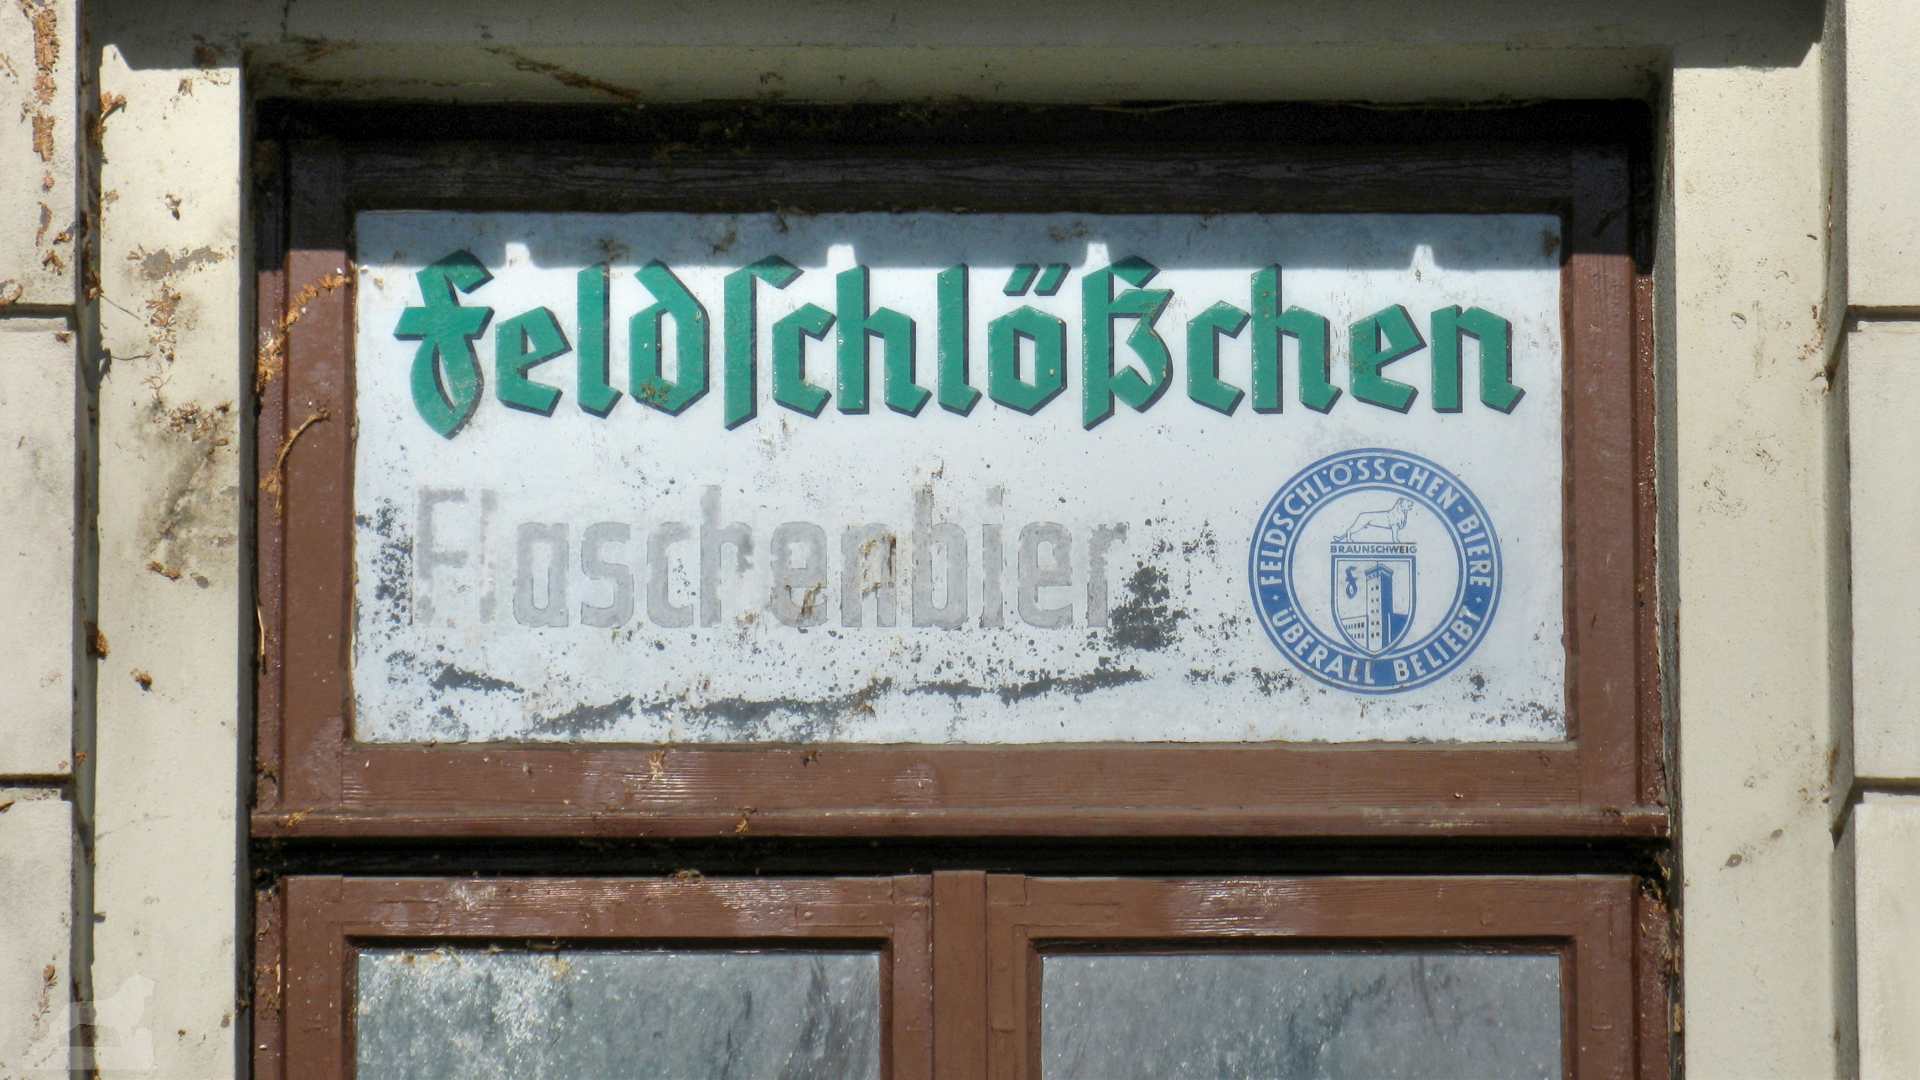 ehemaliger Kiosk am Altewiekring mit Feldschlößchen-Werbung